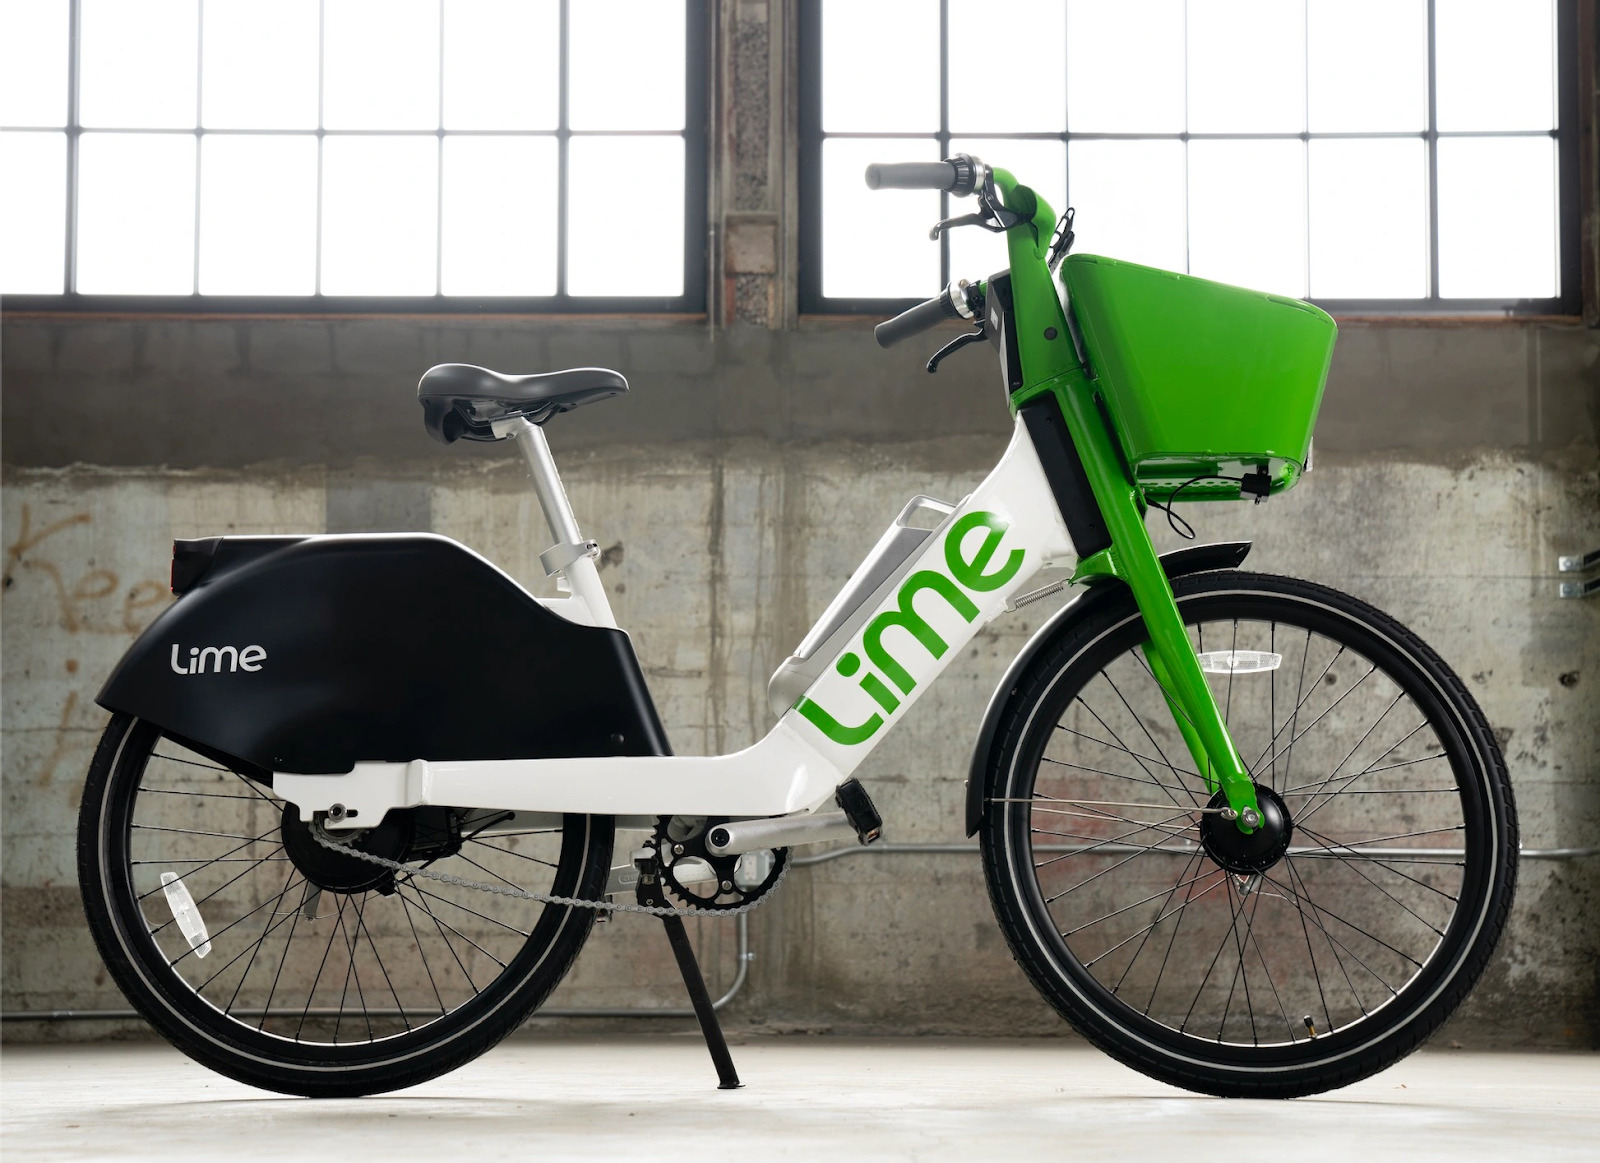 lime bike sharing